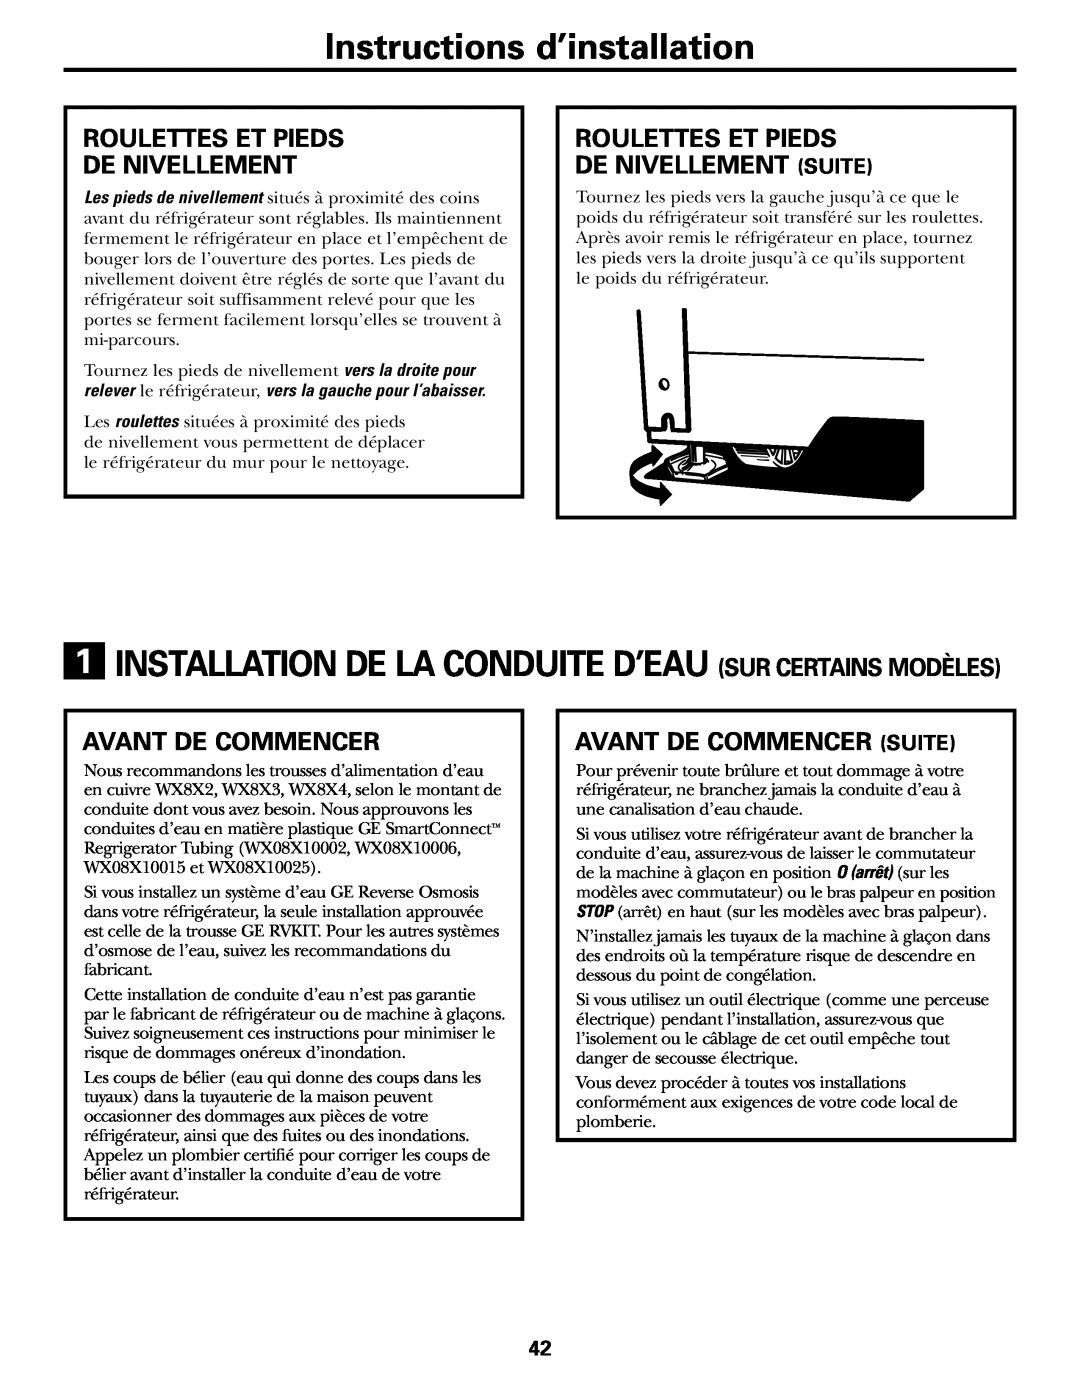 GE 17 operating instructions Instructions d’installation, Roulettes Et Pieds De Nivellement Suite, Avant De Commencer 